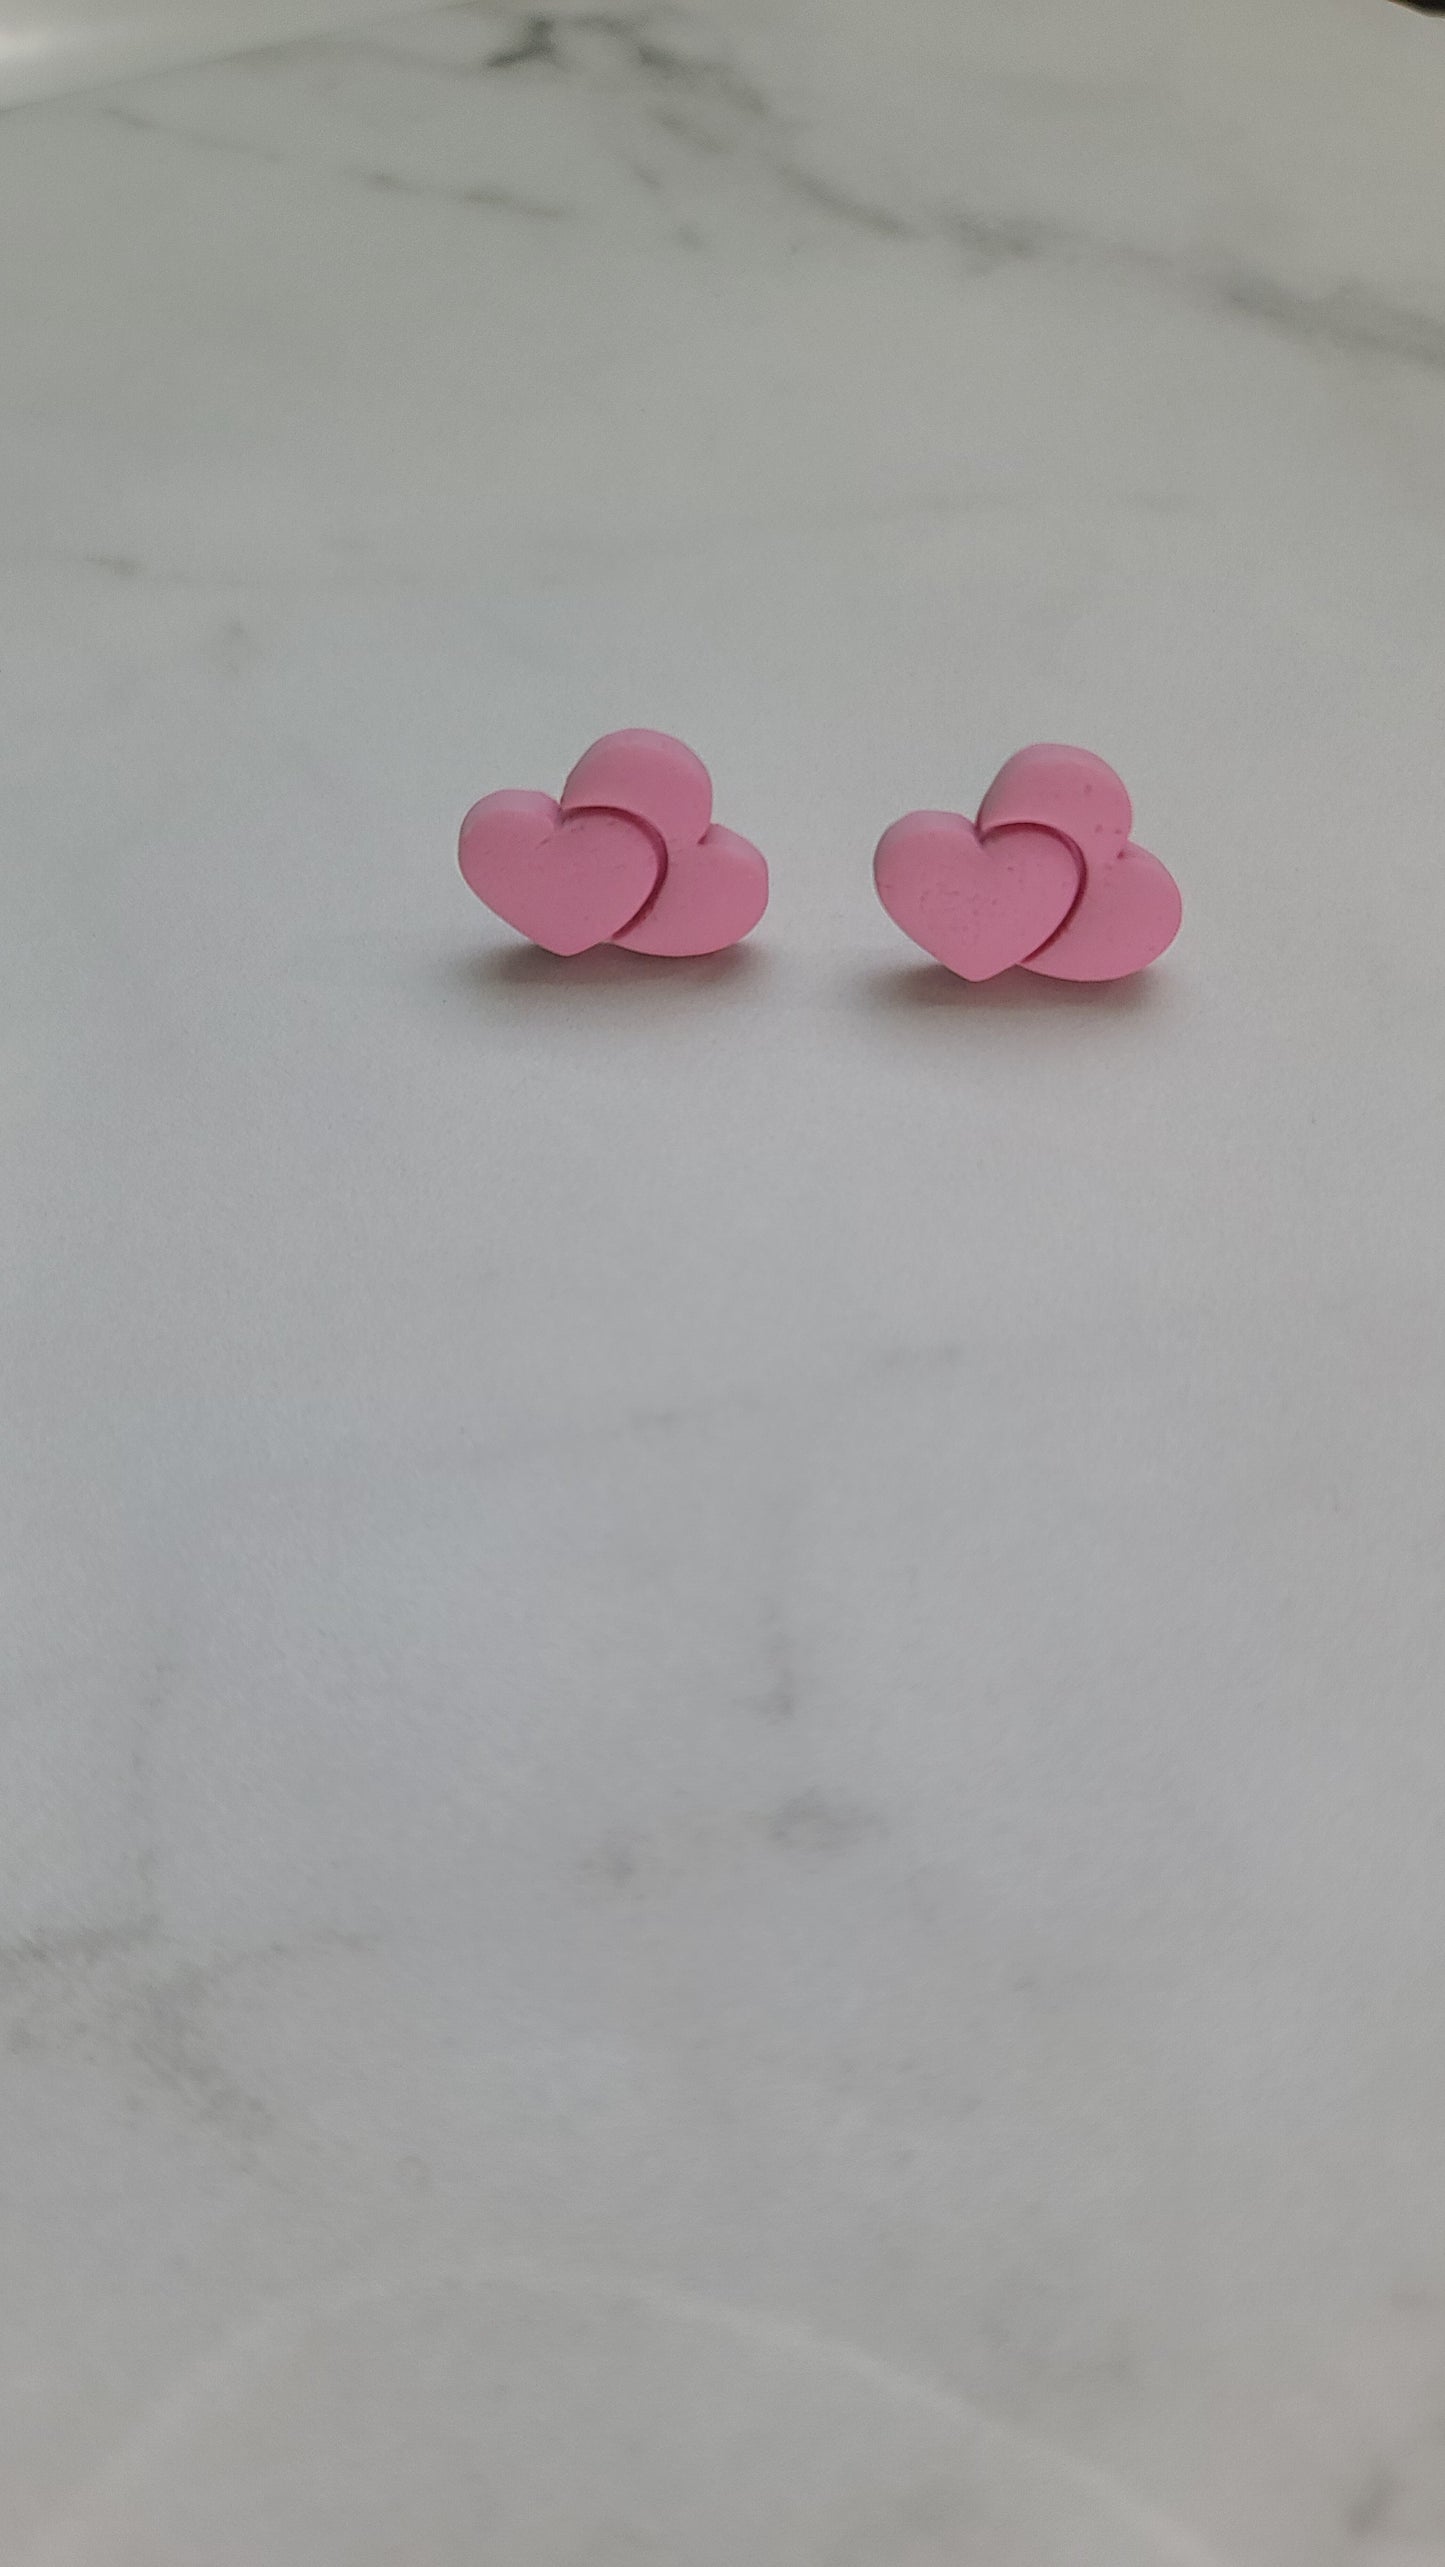 Double heart studs earrings